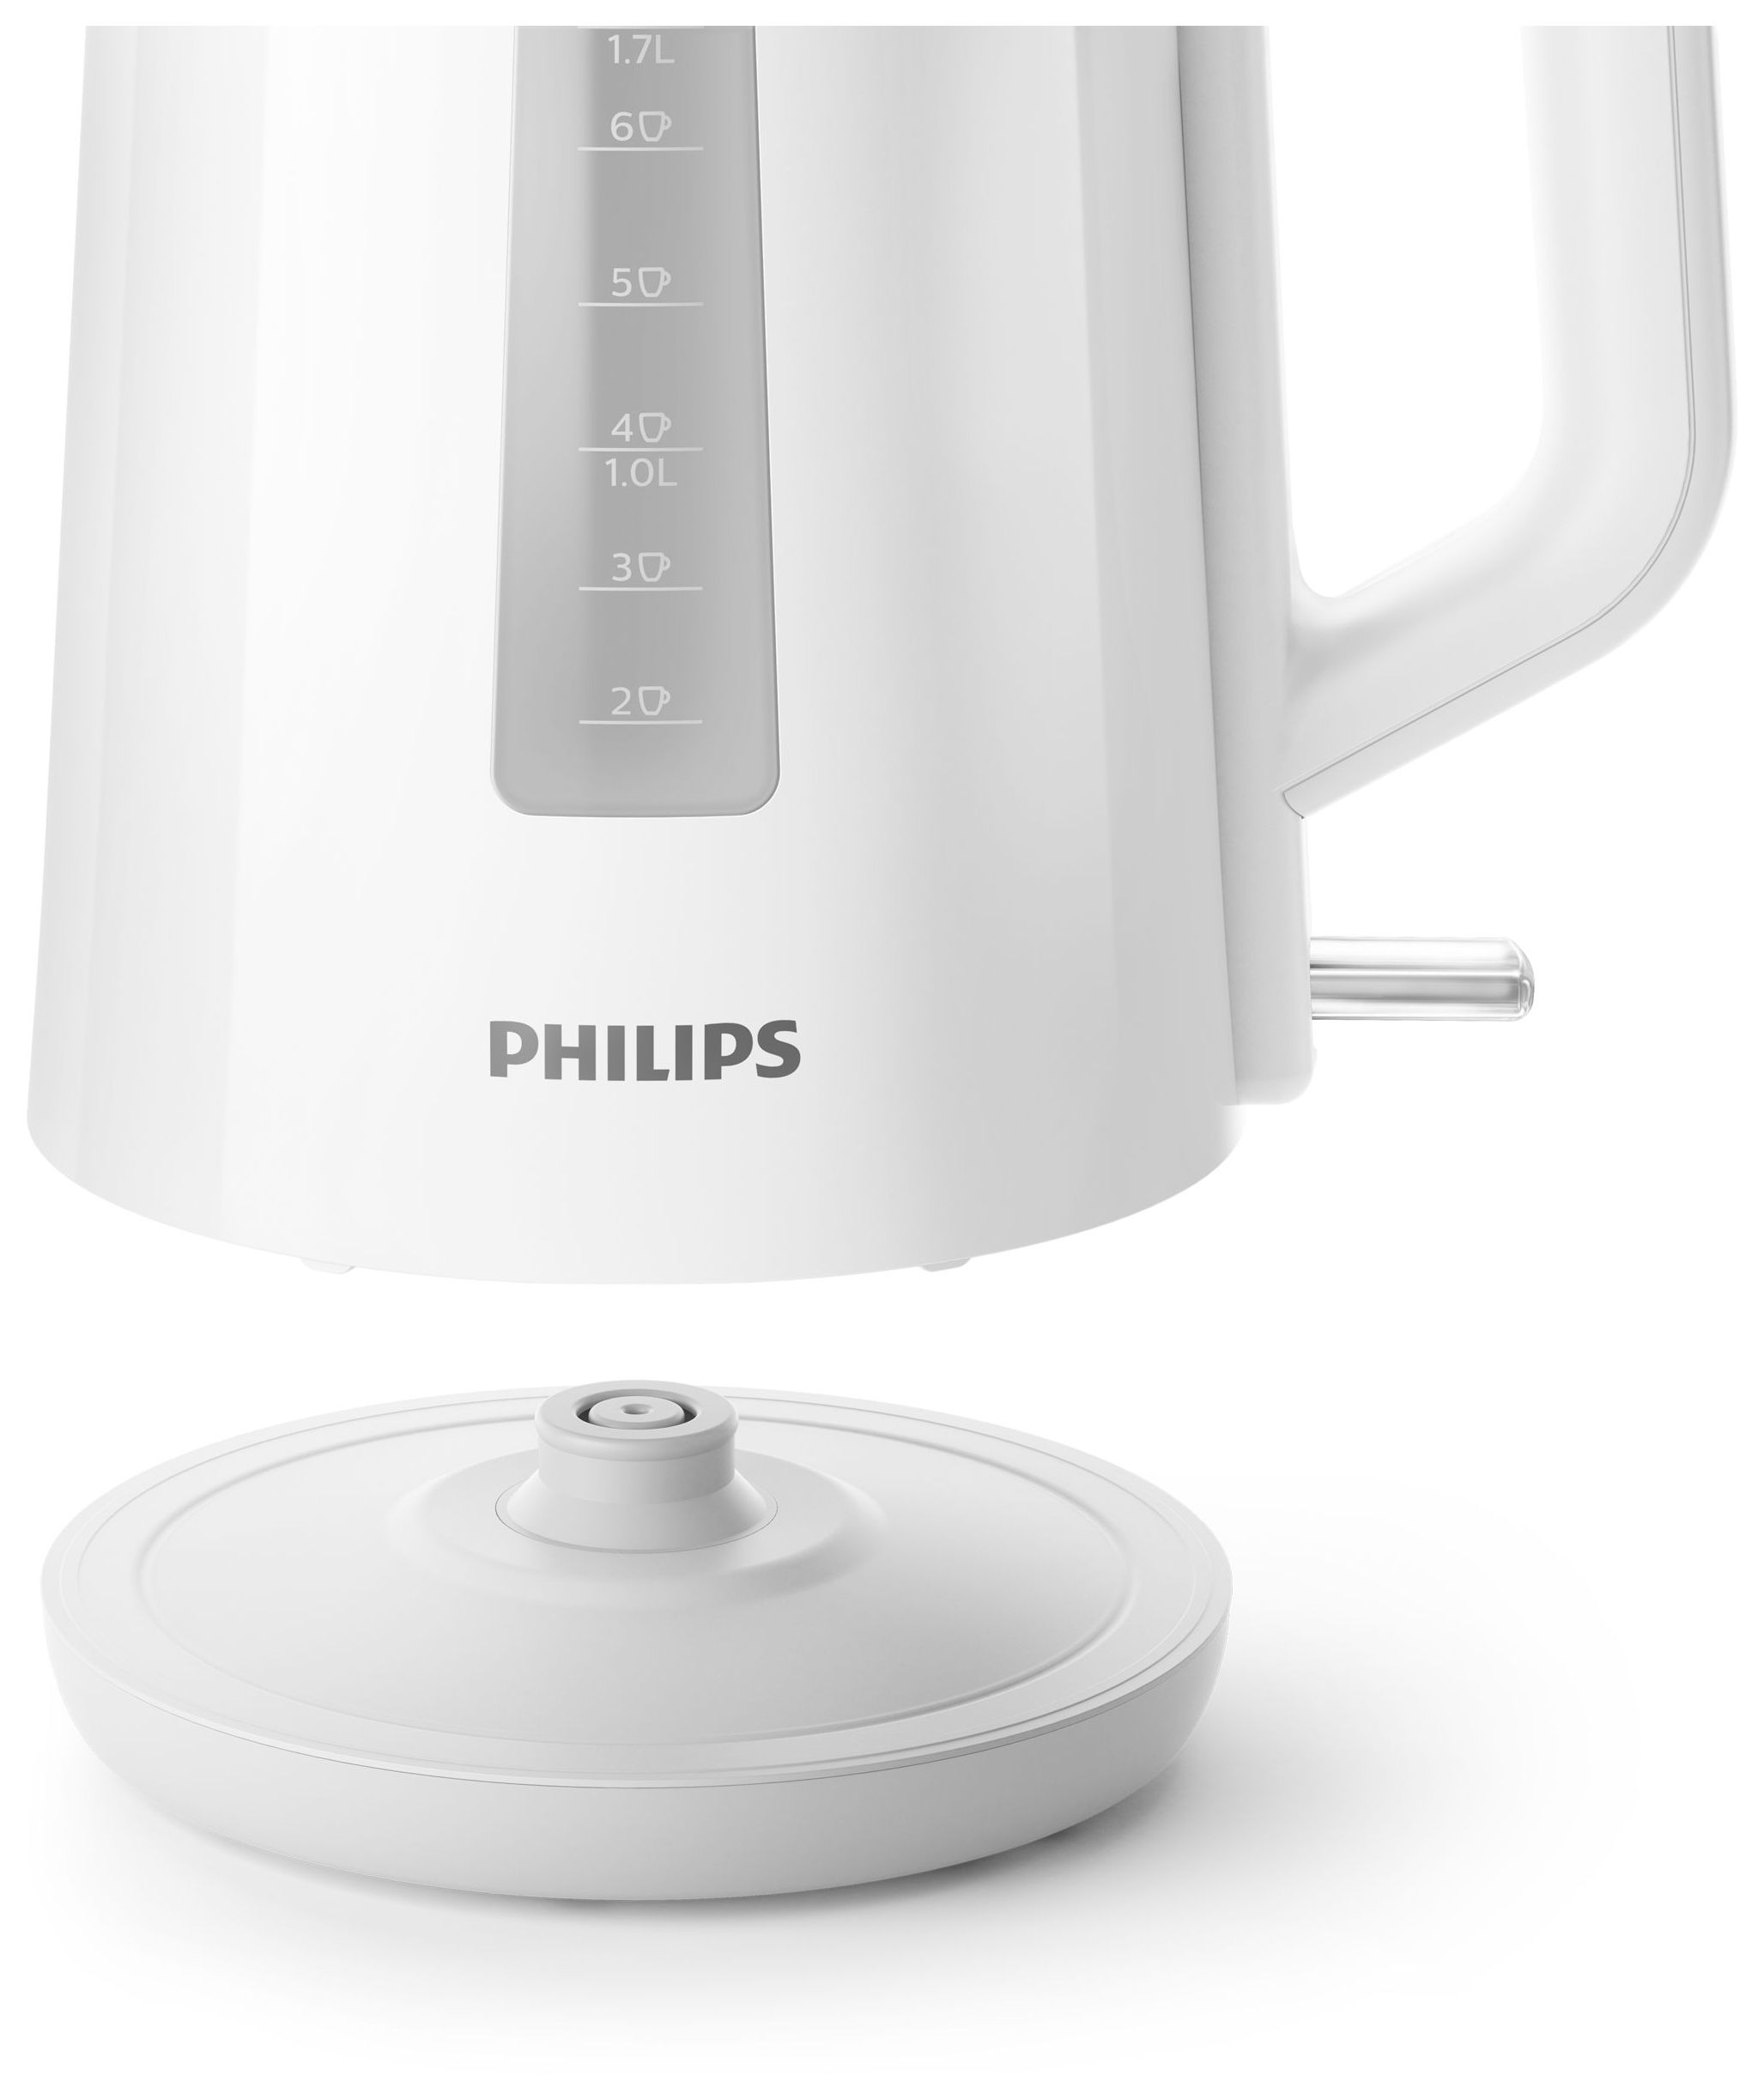 Philips 3000 series HD9318/00 von (Weiß) expert W l 1,7 Technomarkt 2200 Wasserkocher